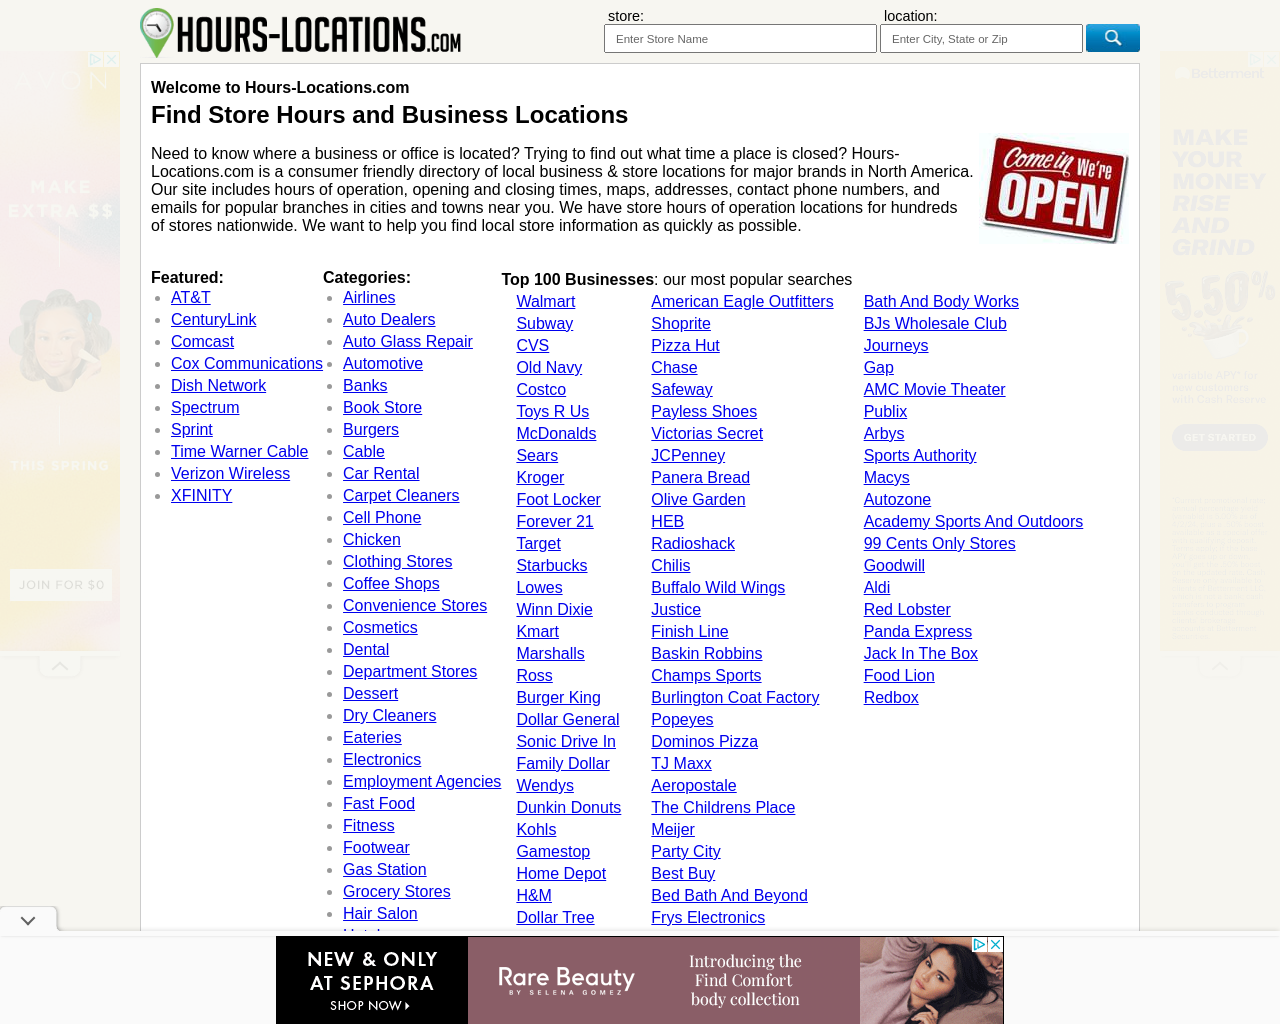 hours-locations.com